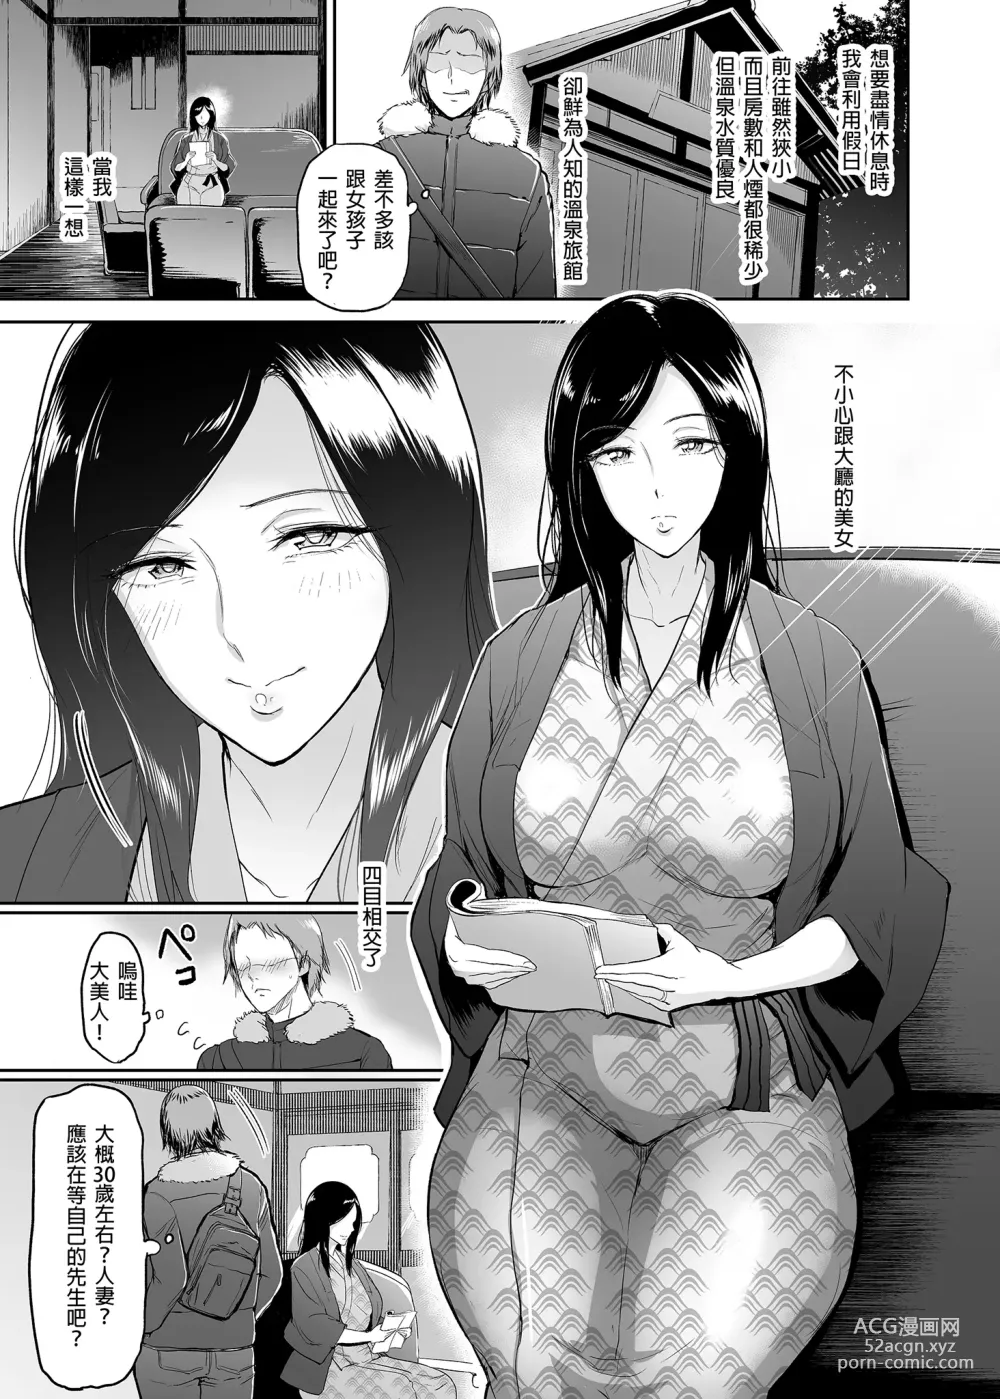 Page 6 of doujinshi マリエさんと温泉+マリエさんとお風呂場+処女を散らす部屋